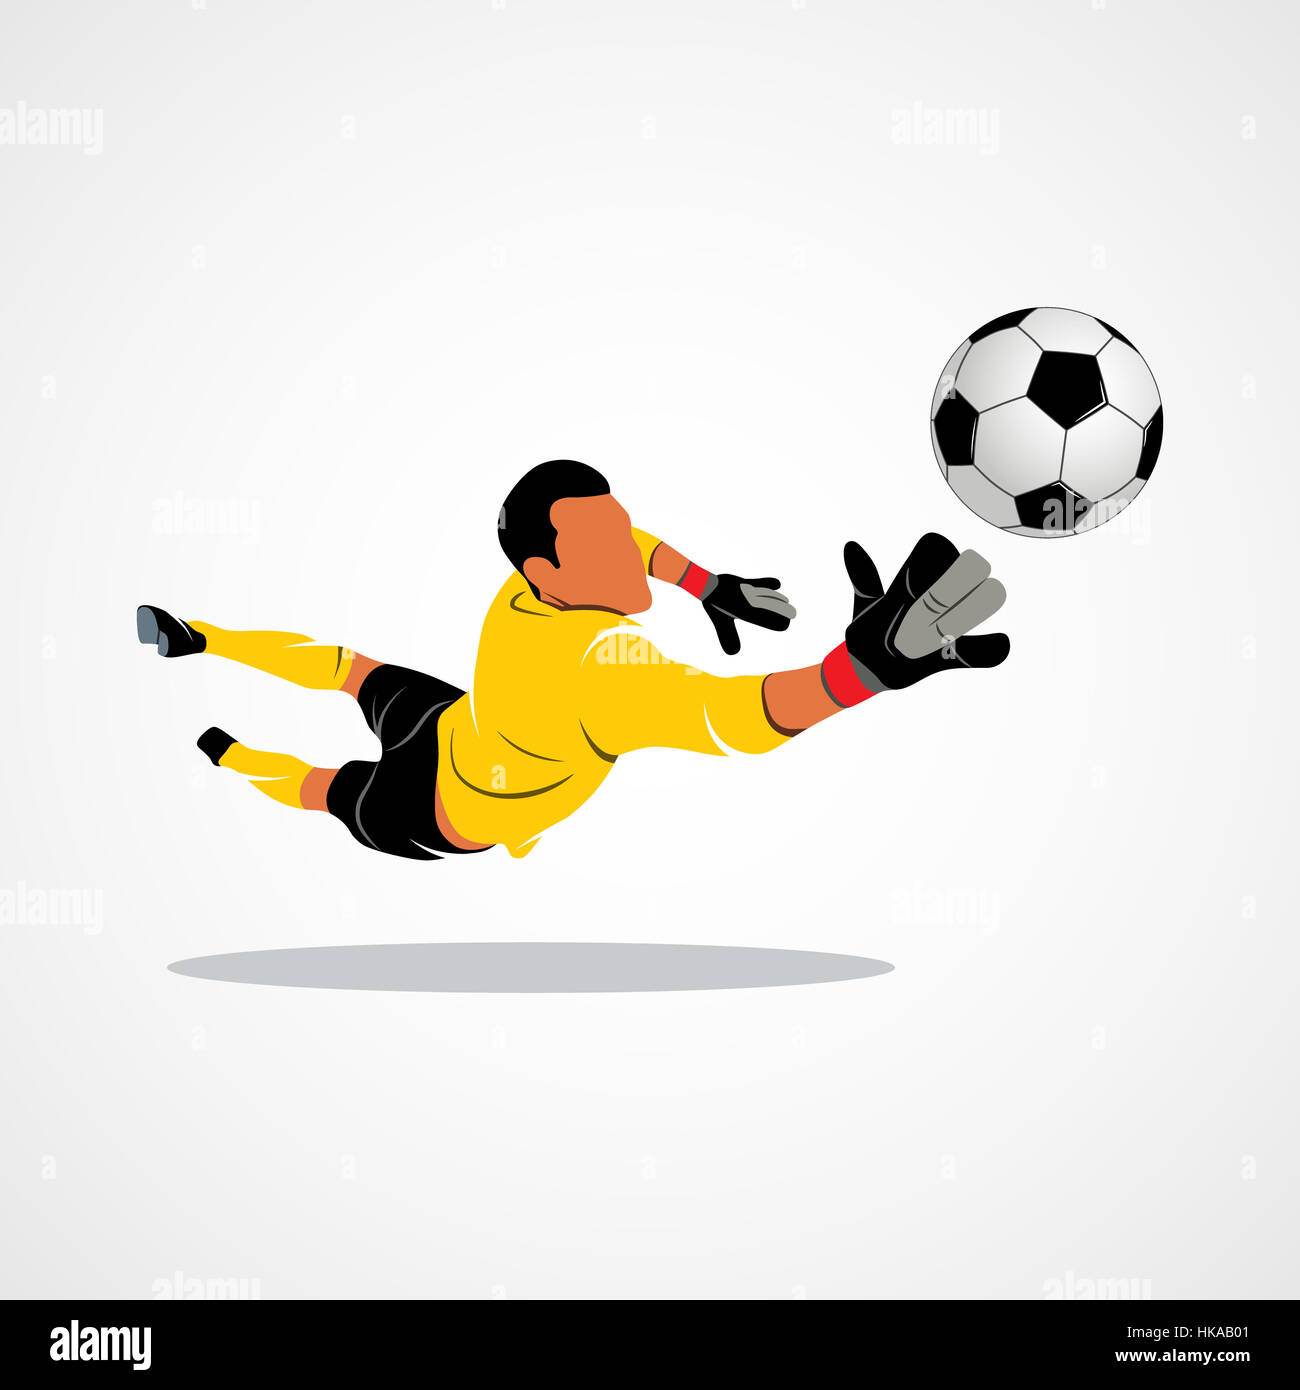 Fußball-Torwart springt für den Ball Fußball auf einem weißen Hintergrund.  Foto-Illustration Stockfotografie - Alamy